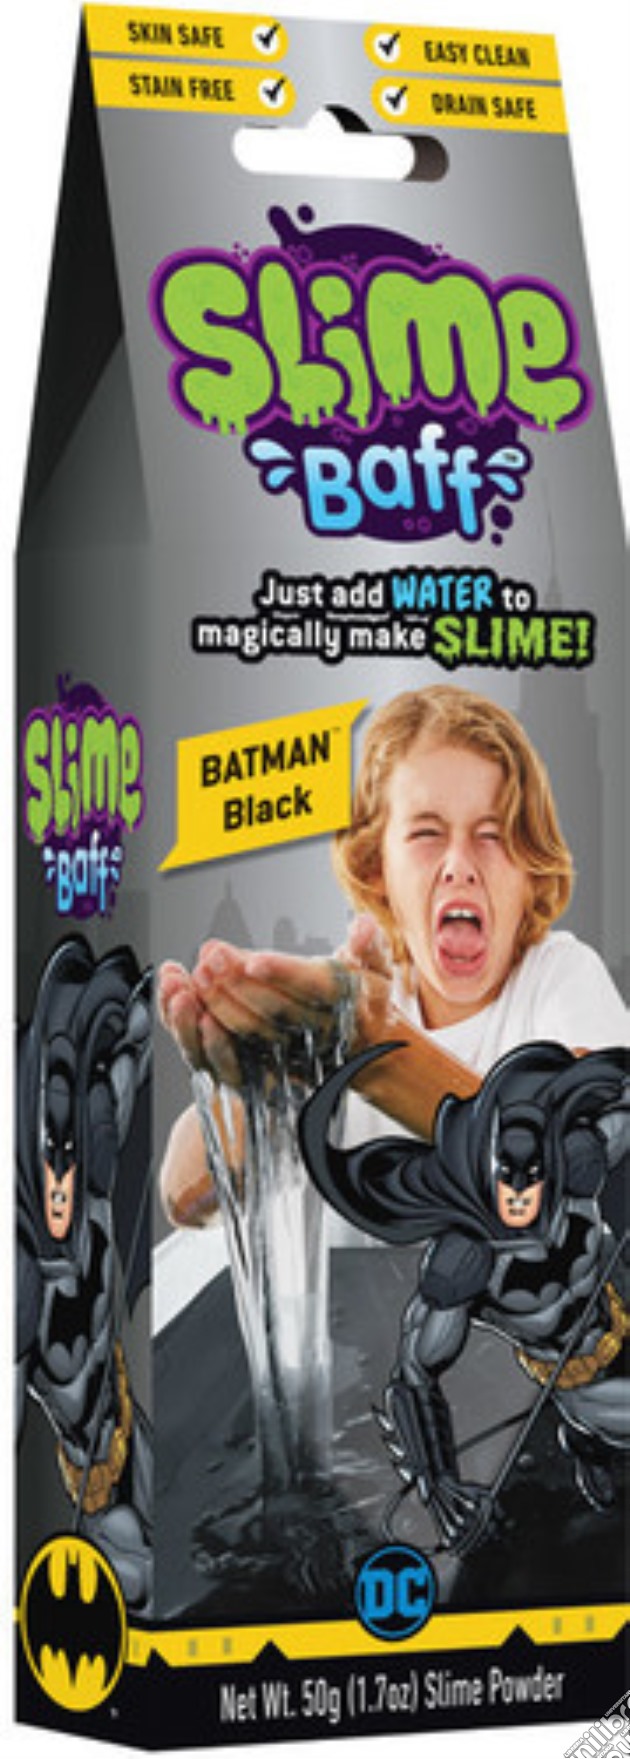 Batman Black Mini Slime gioco di NJ Croce